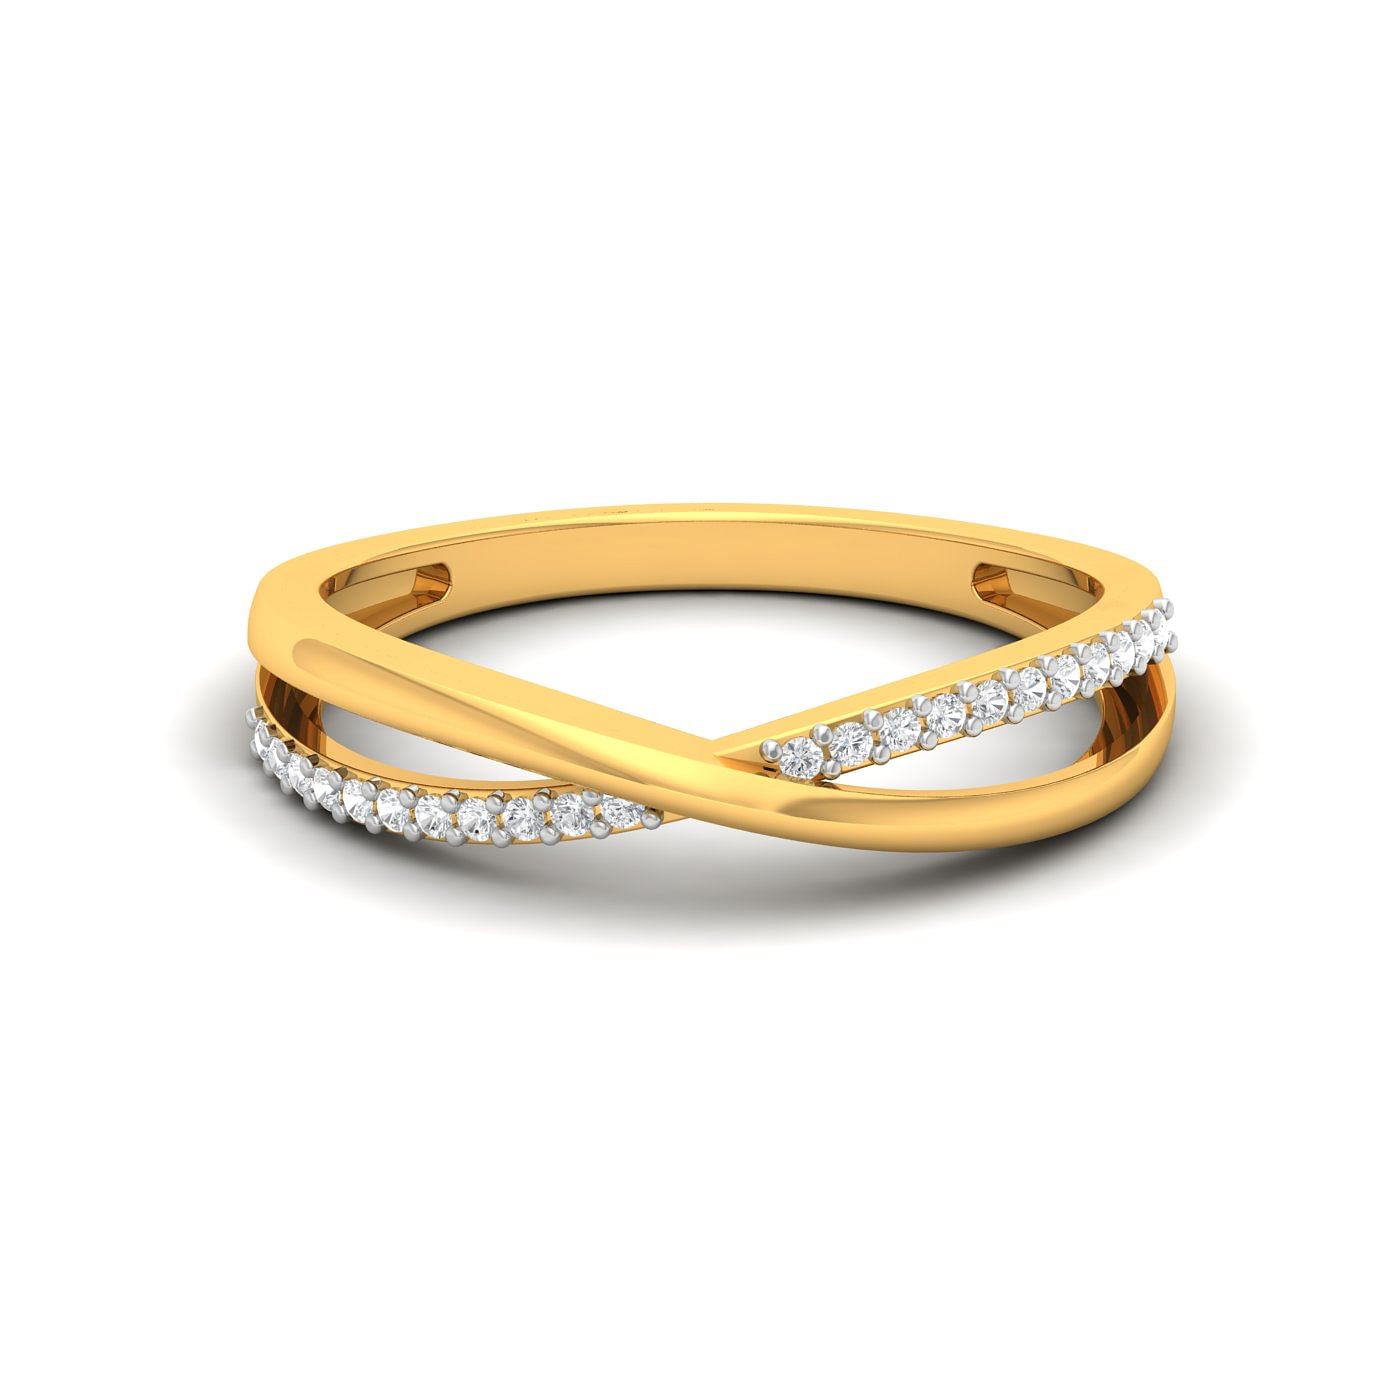 Criss Cross Diamond Band Yellow Gold Fiance Ring